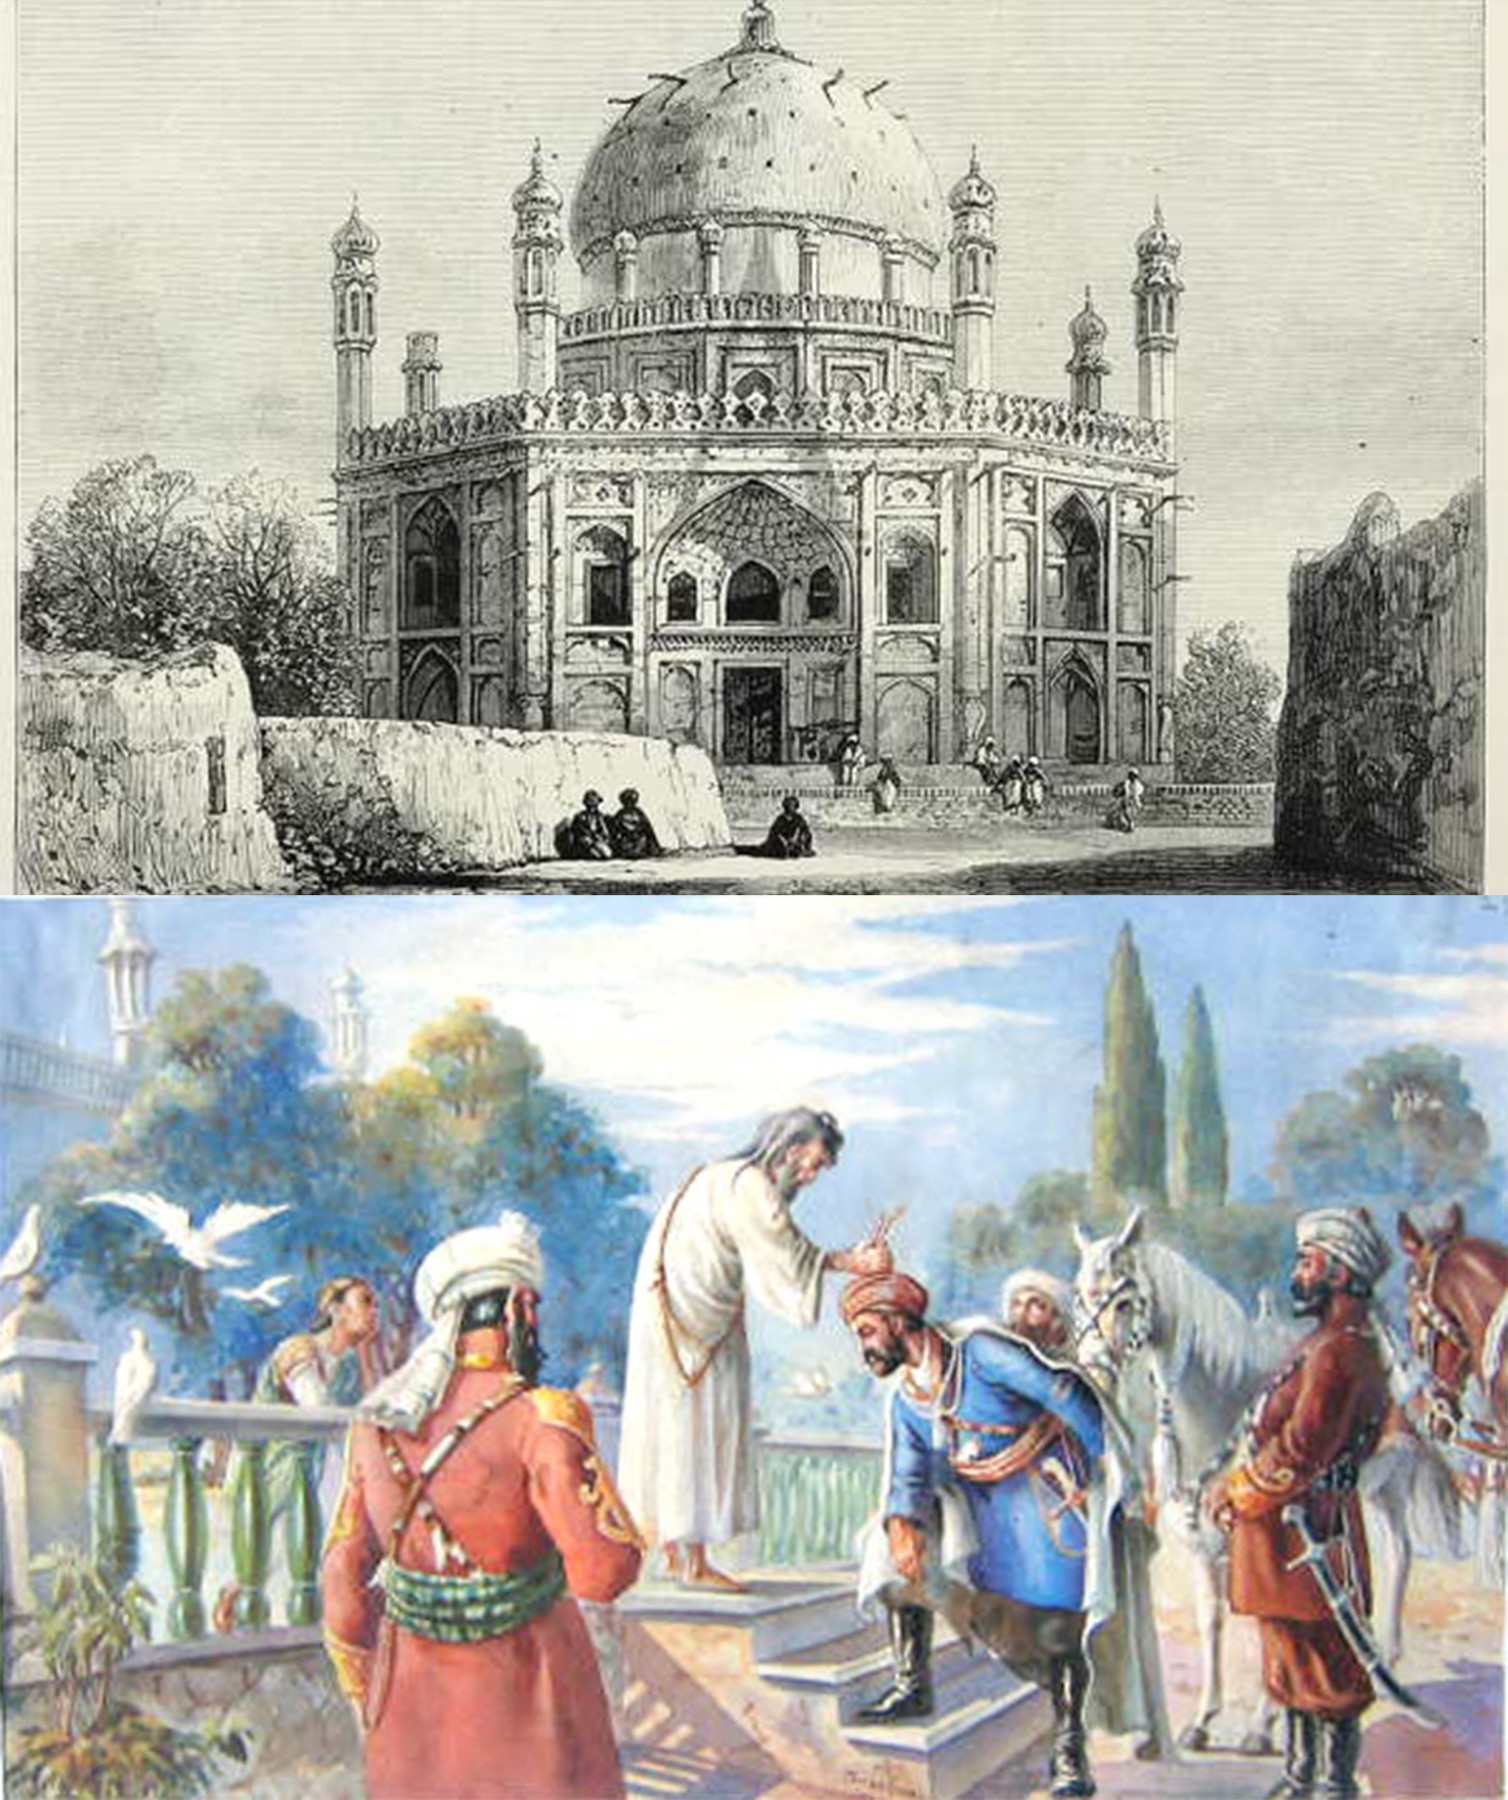 Ahmad-Shah-Durrani-Mausoleum-old-viewsAhmad-Shah-Durrani-Mausoleum-old-views